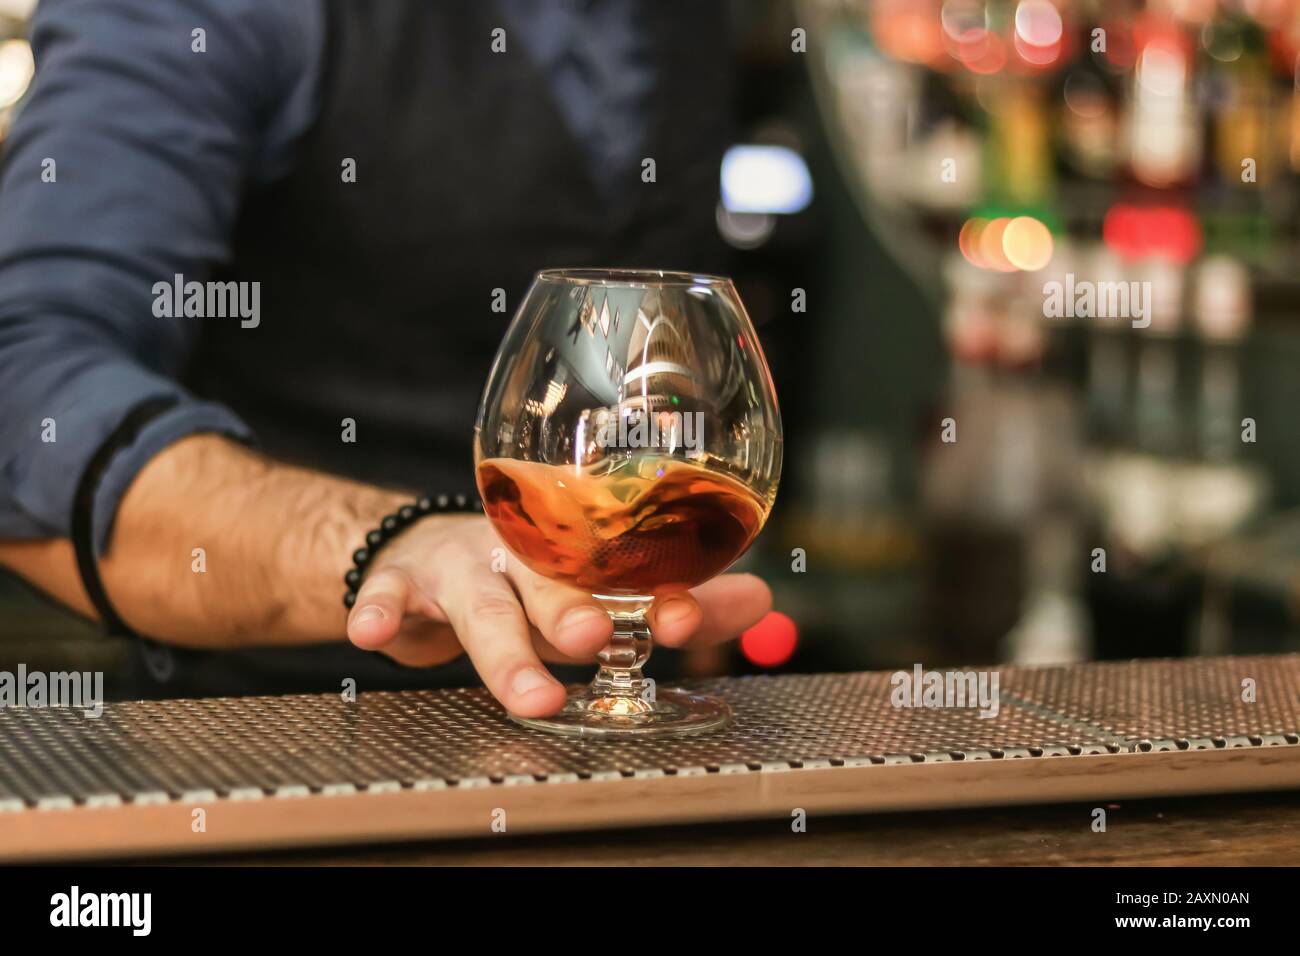 tenere a mano un bicchiere di whisky, bevanda alcolica Foto Stock